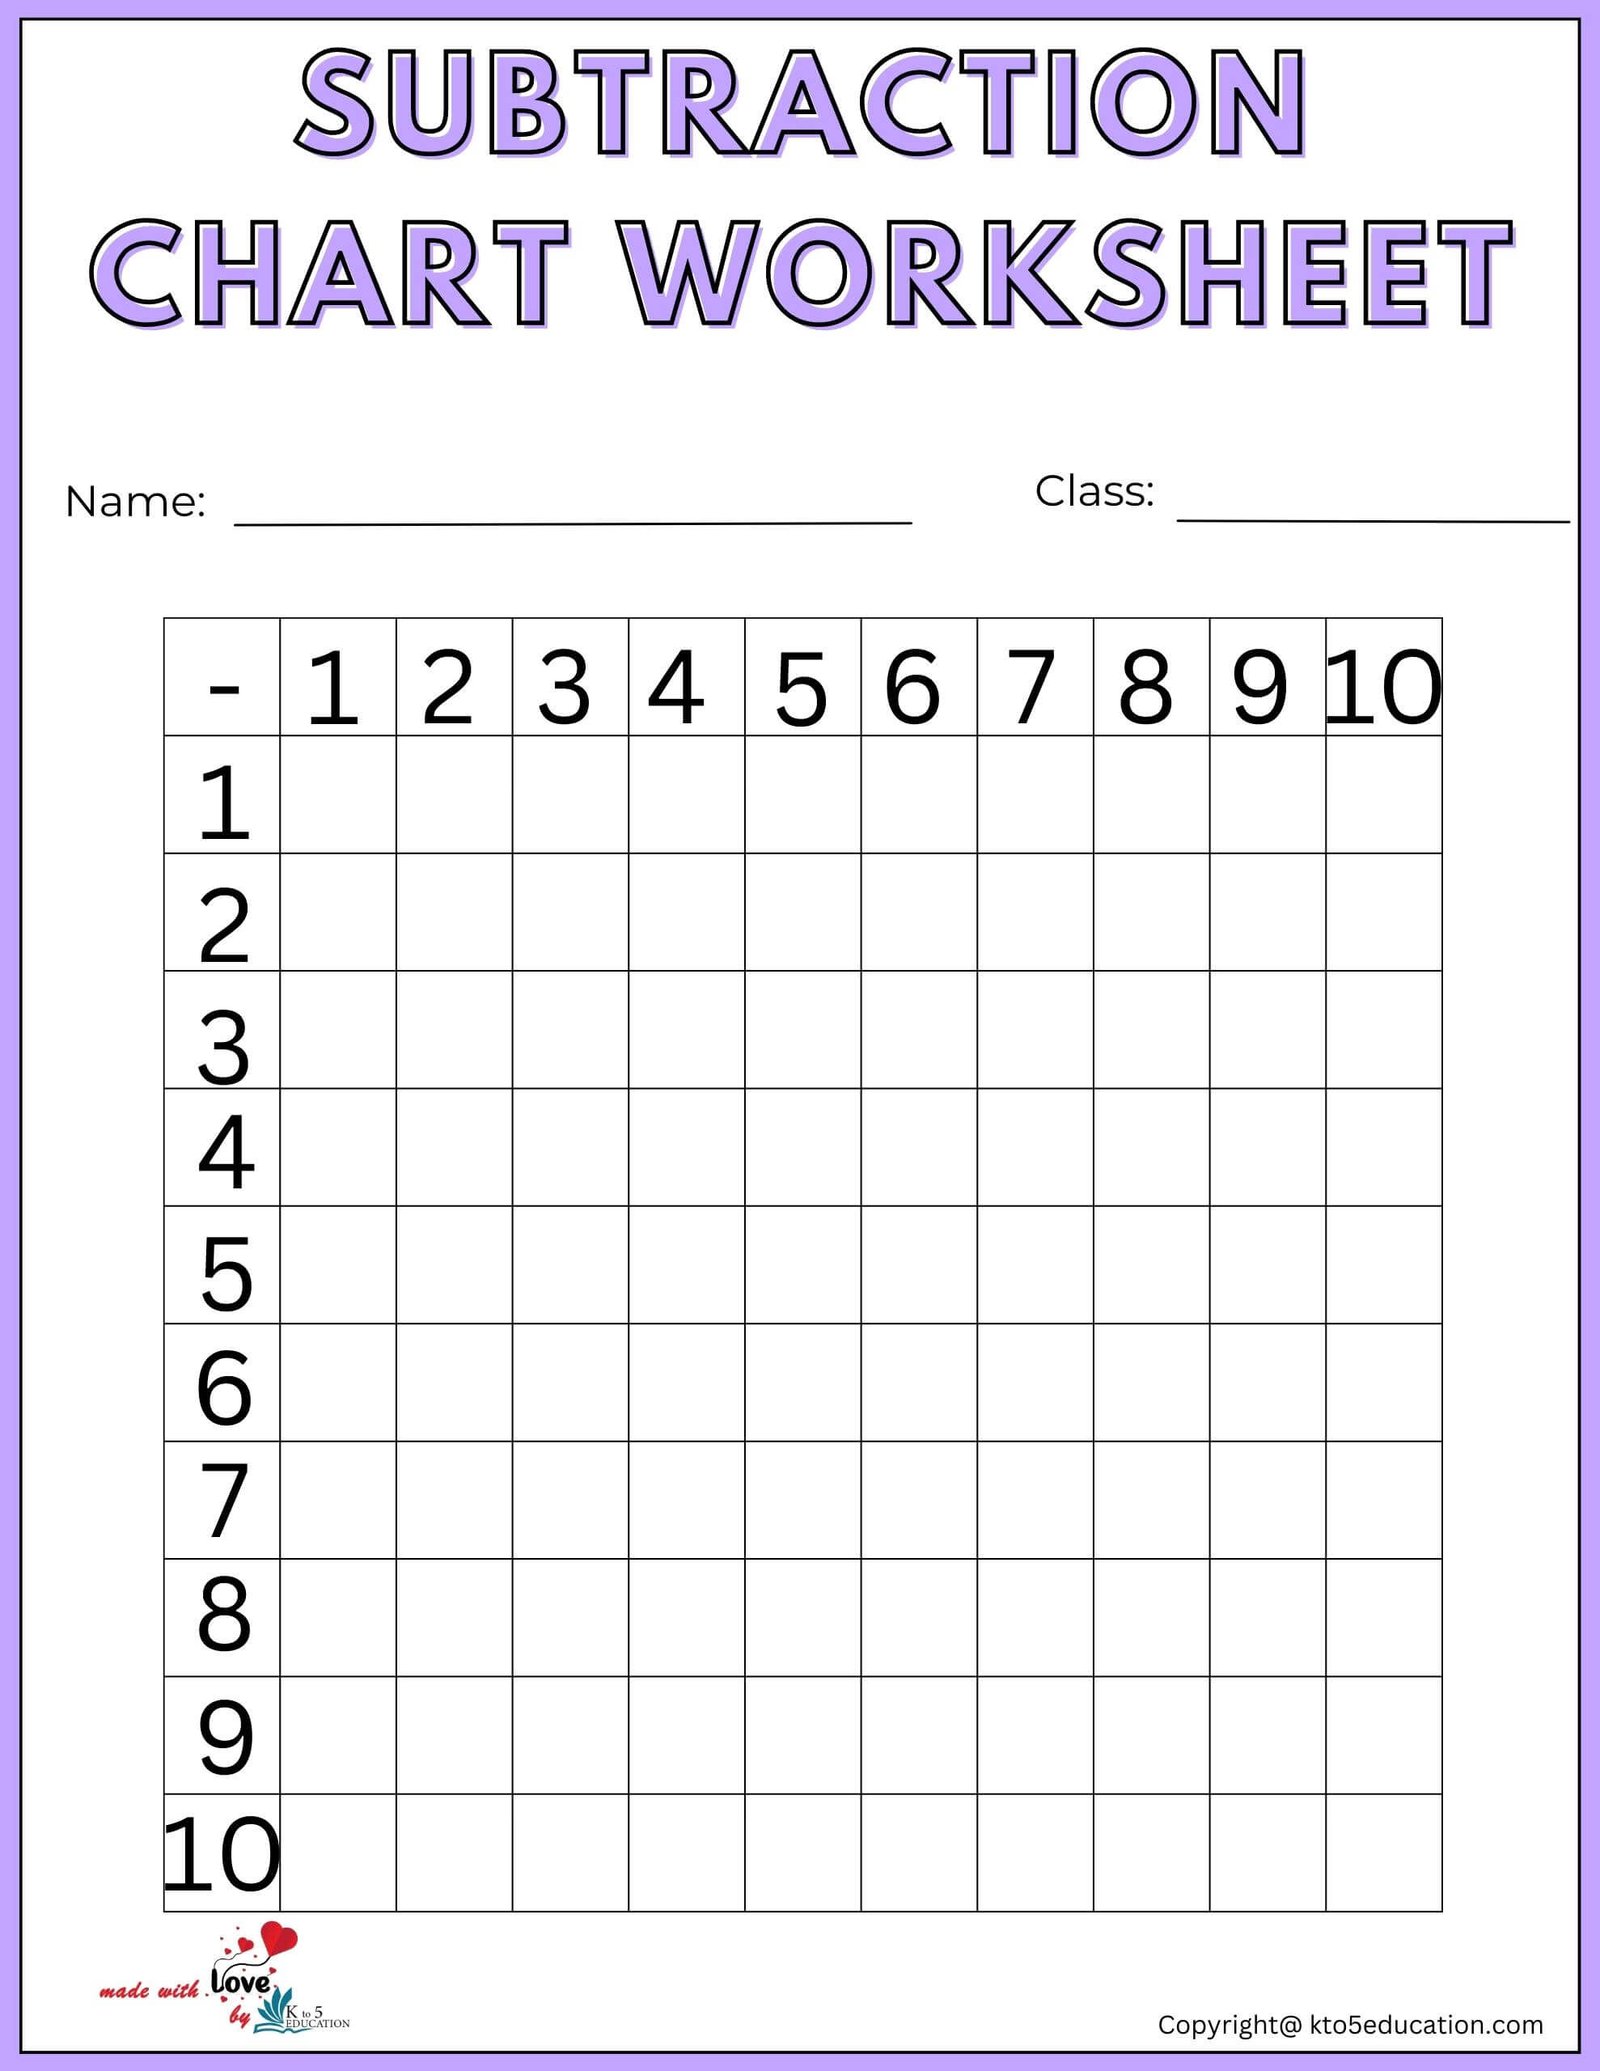 Subtraction Chart Worksheet For Preschool